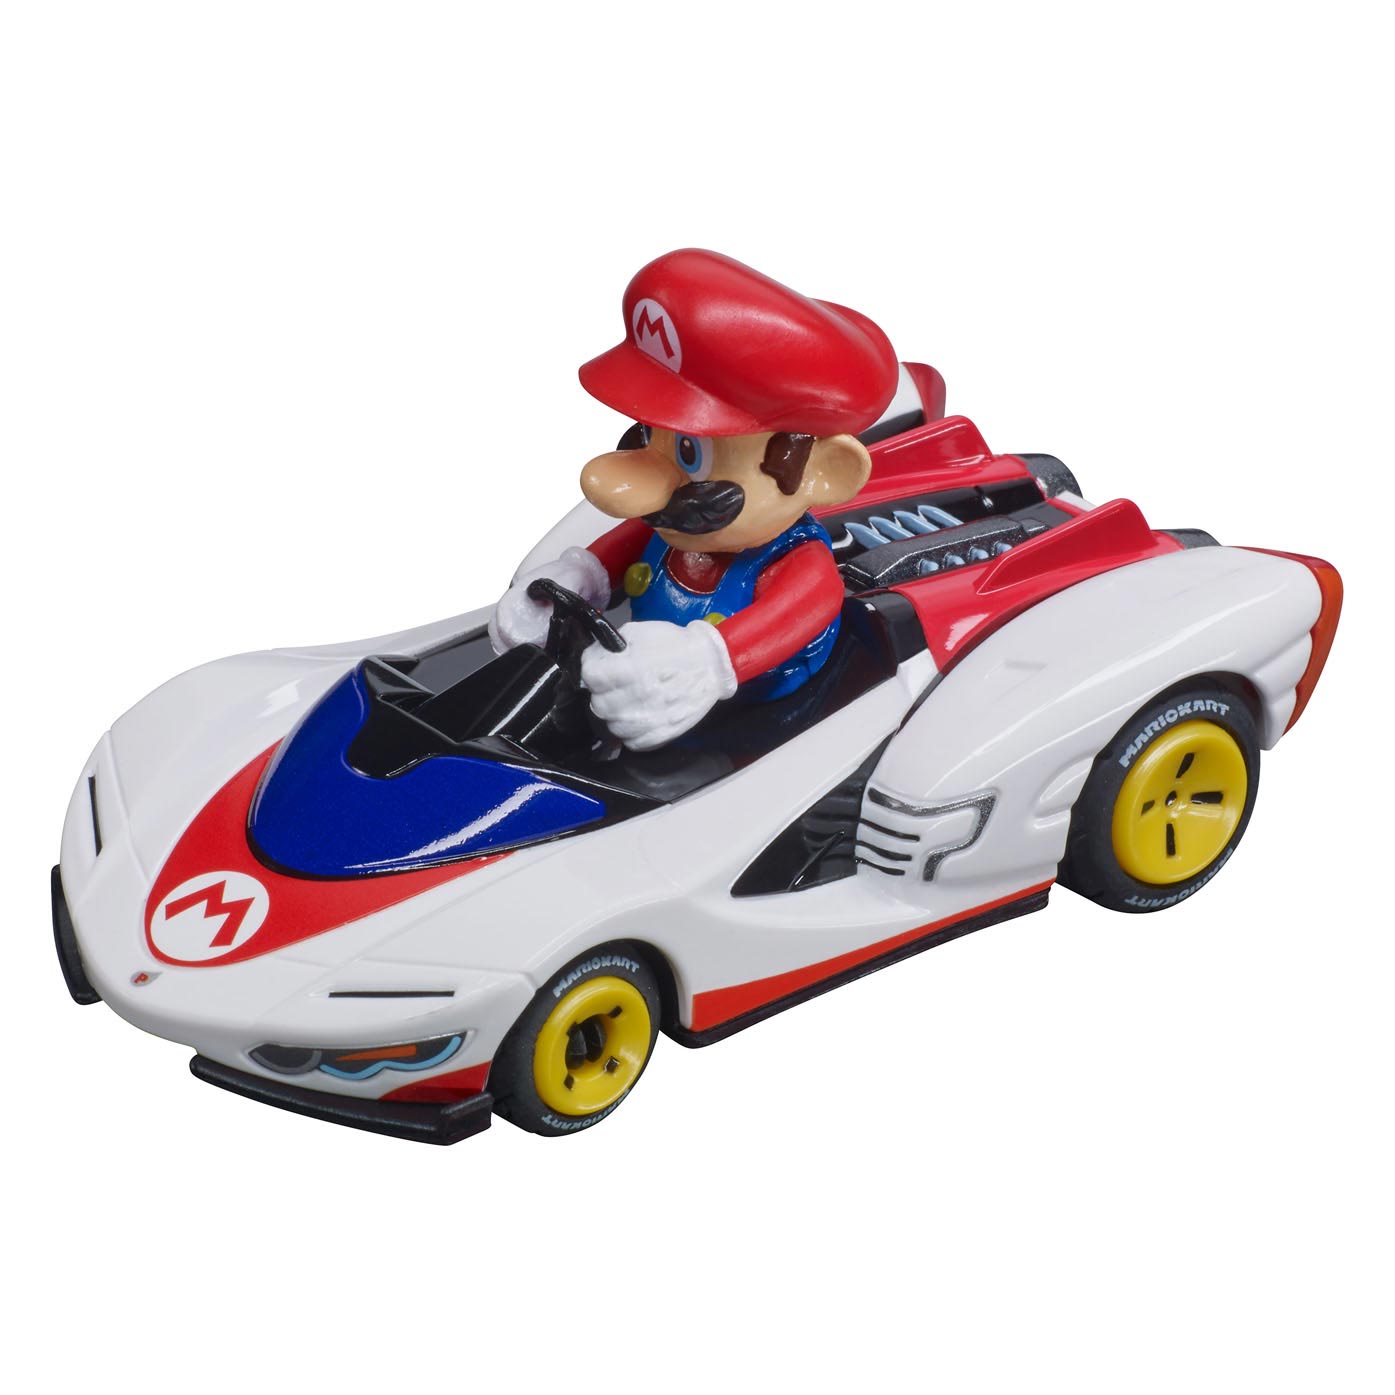 Kaufen Sie Pull back Super Mario Kart - P-Wing, 2dlg. online?